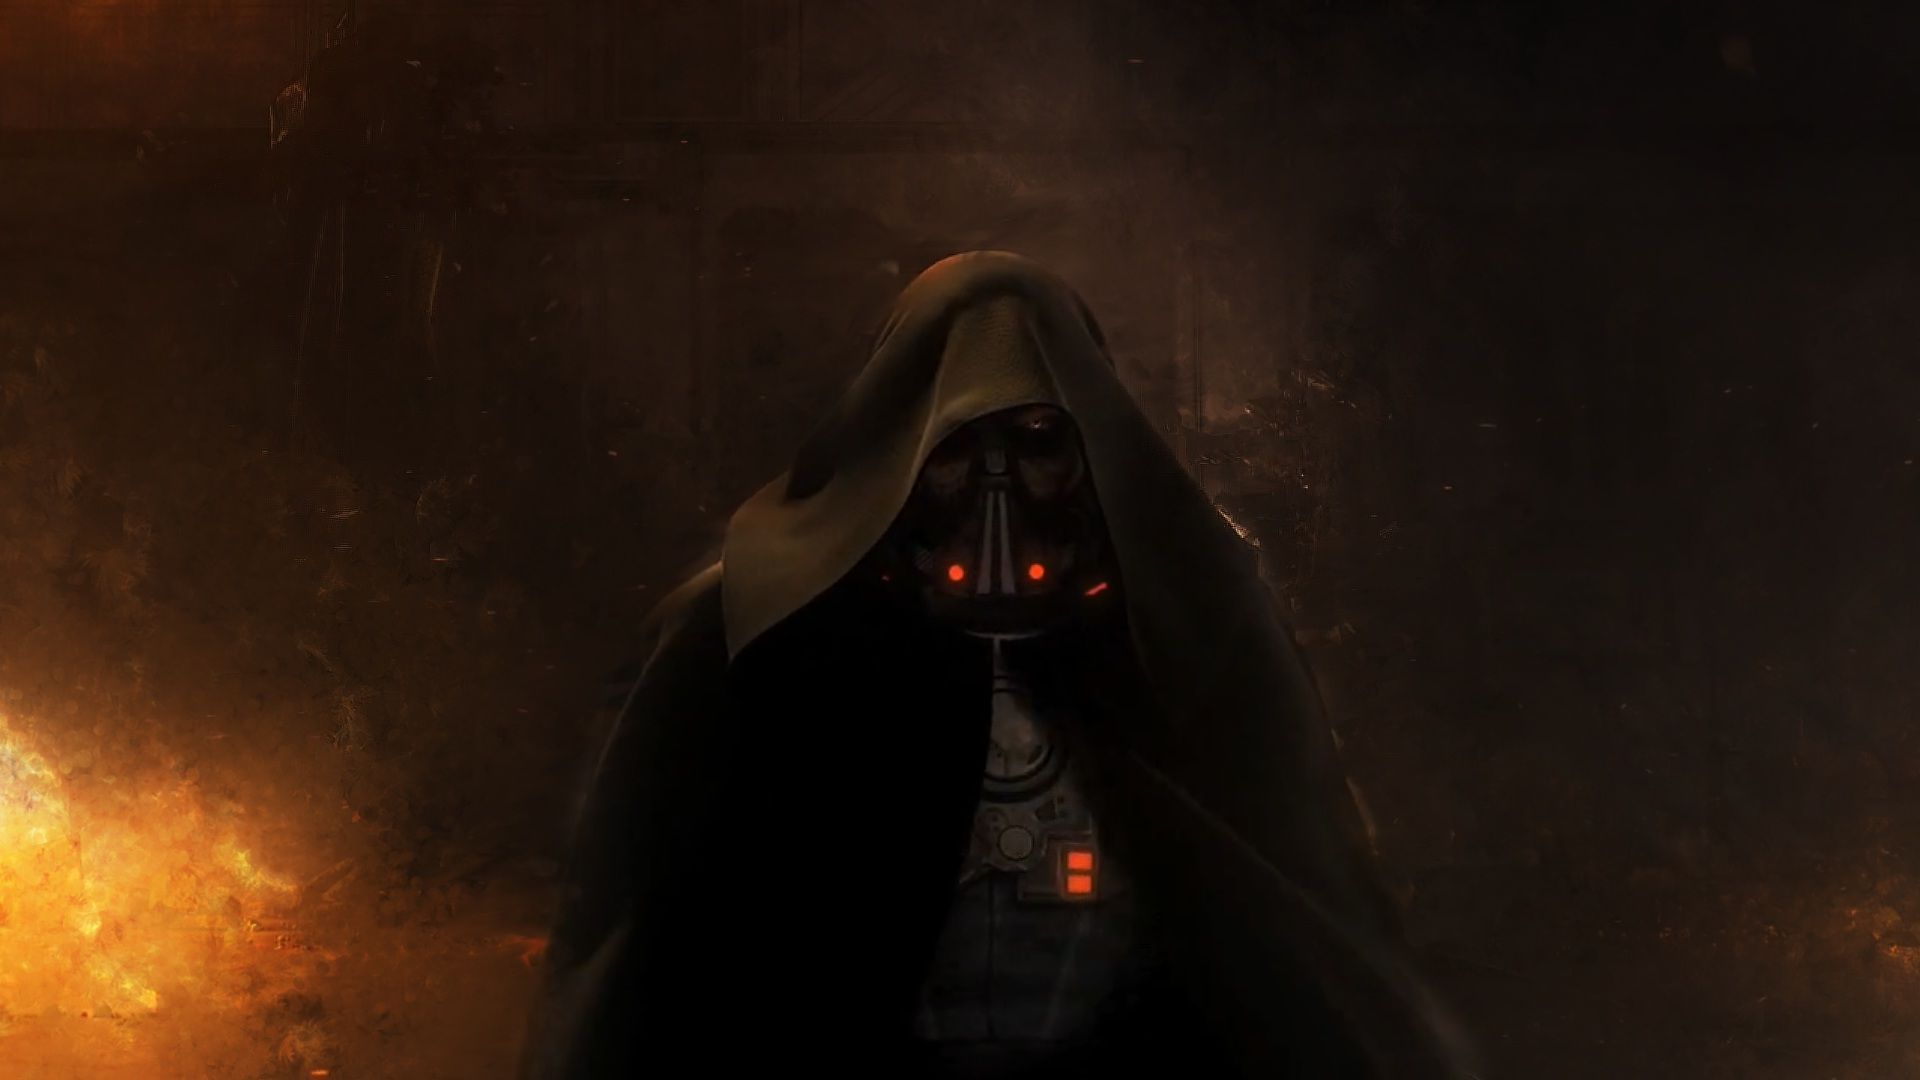 Sith Star Wars HD Wallpaper